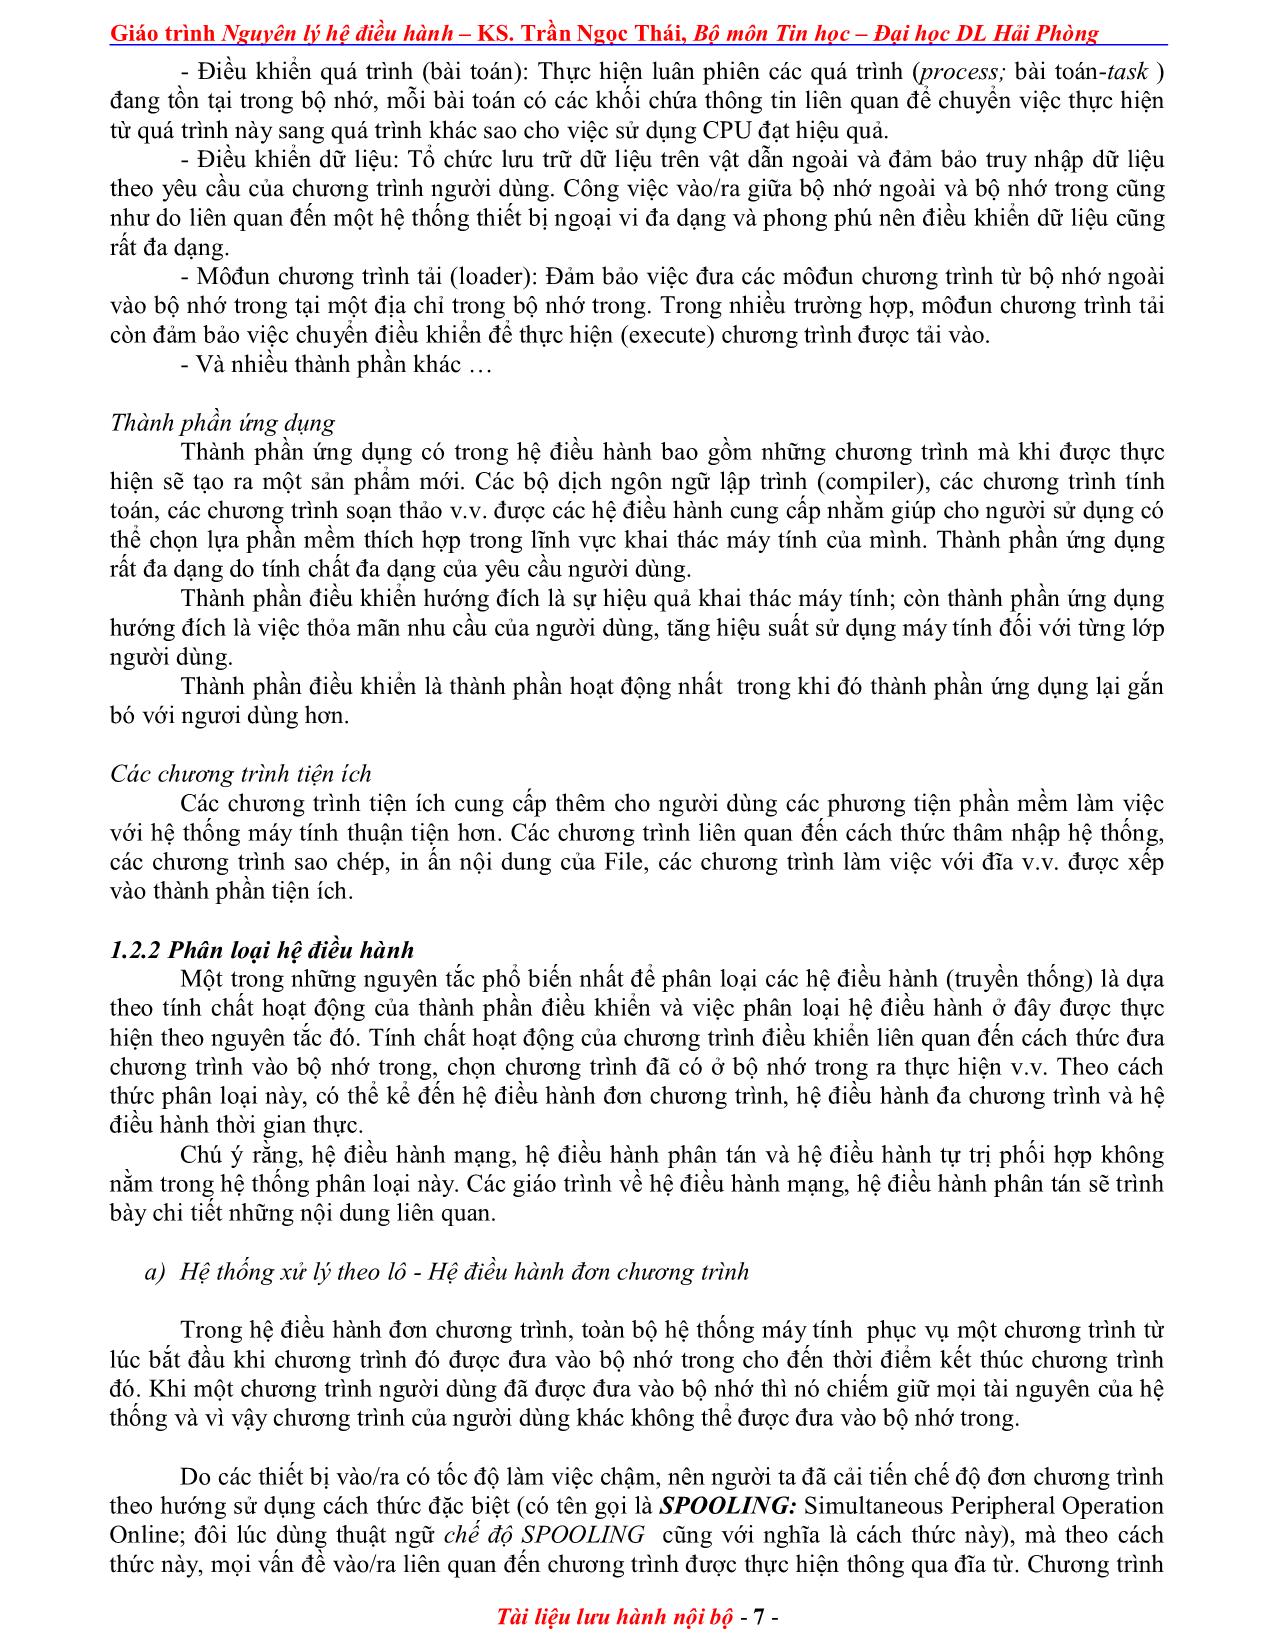 Giáo trình Nguyên lý điều hành (Phần 1) trang 7